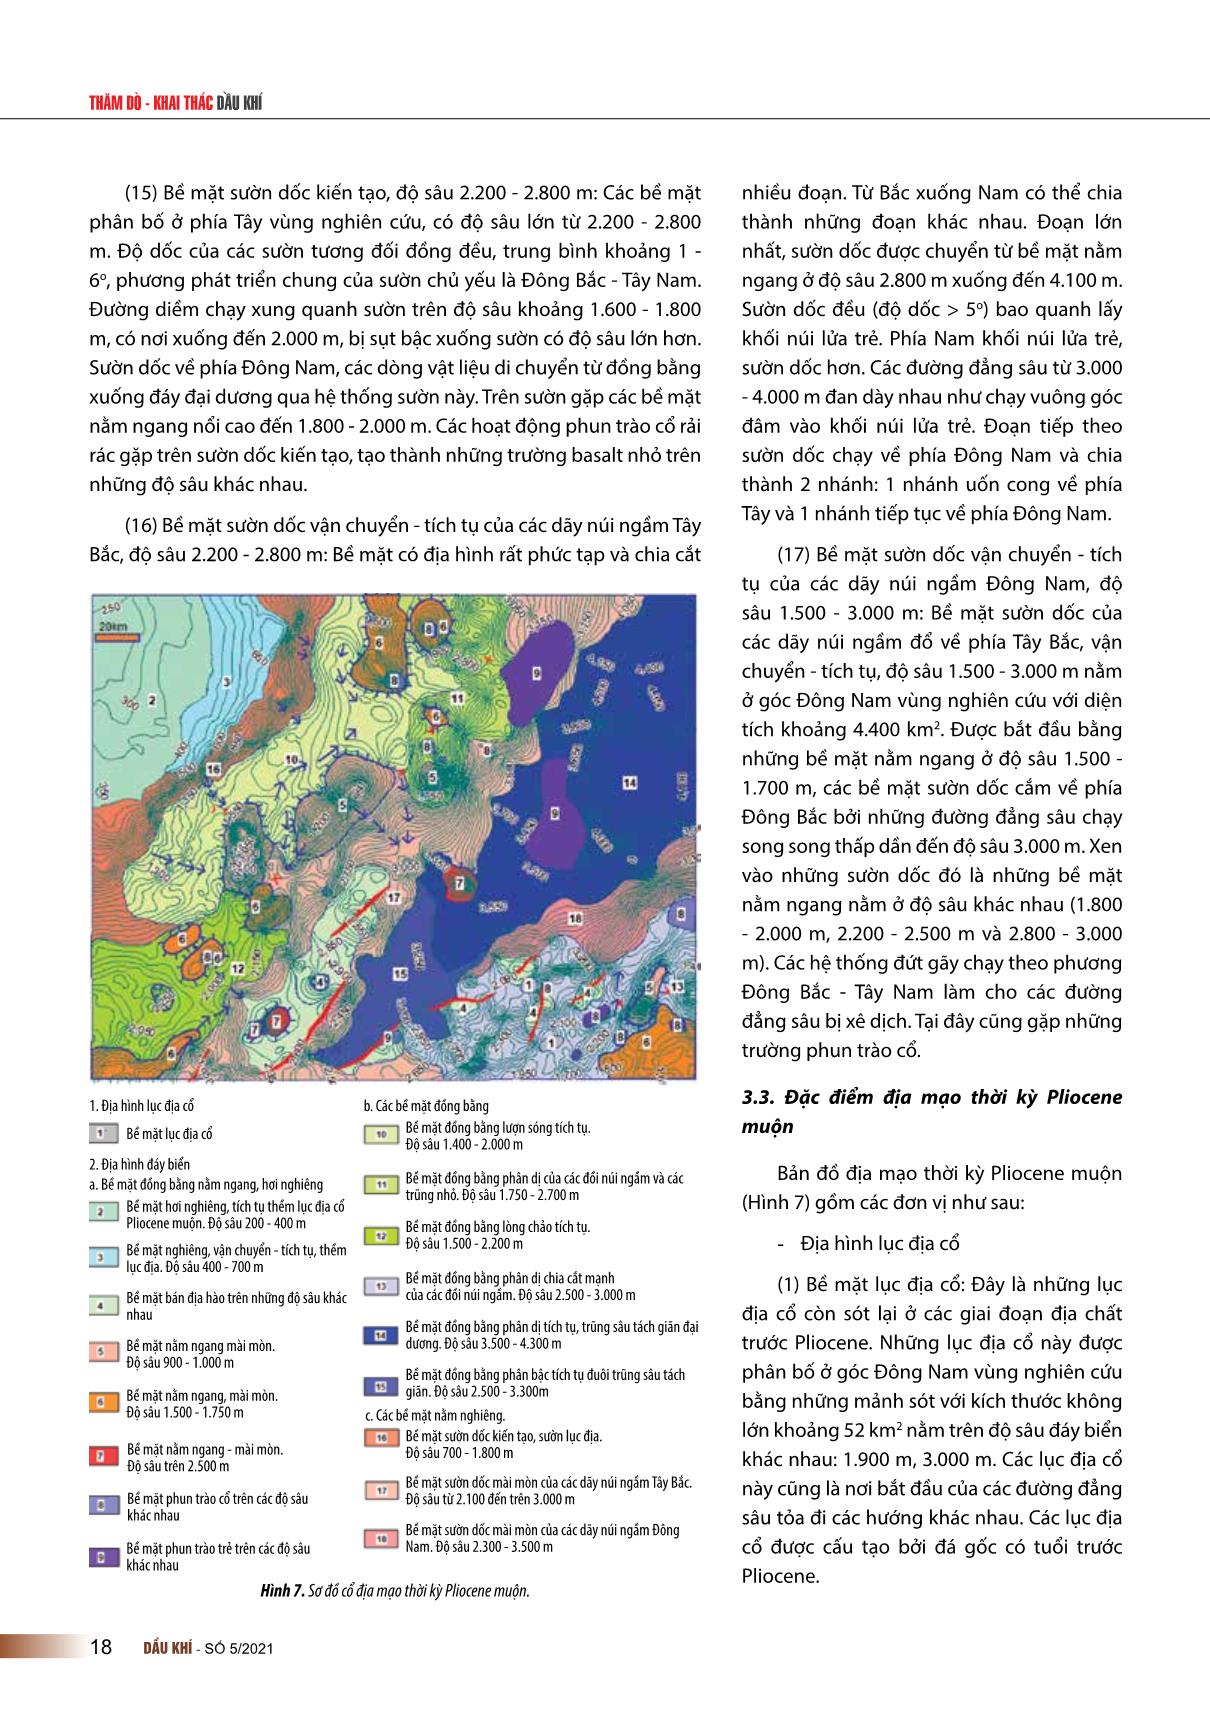 Đặc điểm địa mạo thời kỳ Pliocene khu vực Tây Nam trũng sâu biển Đông trang 8